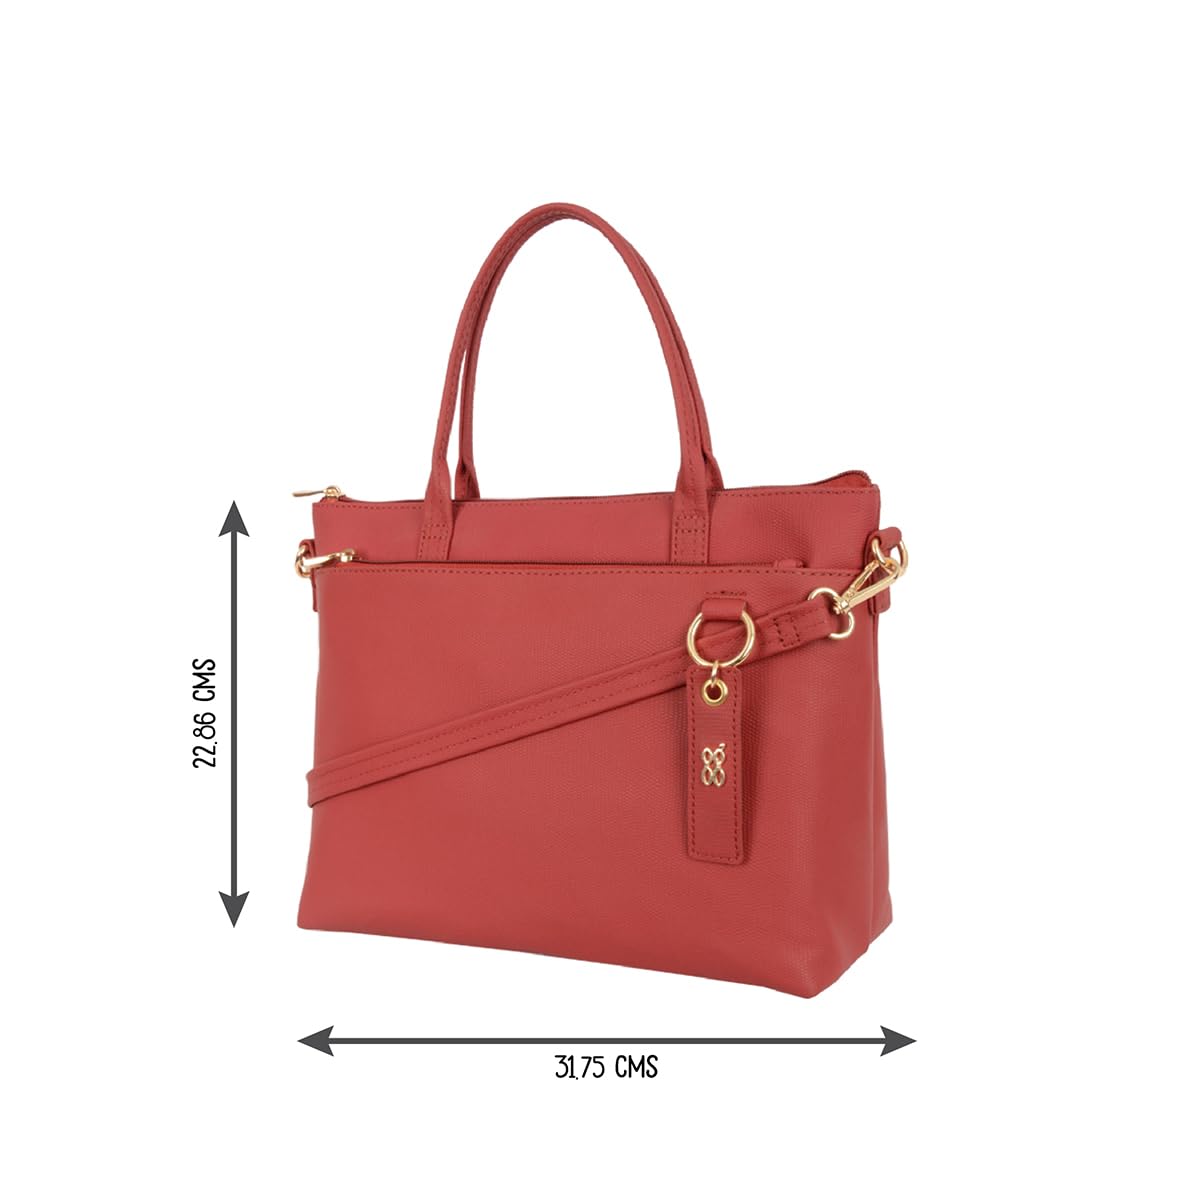 Buy Baggit Women's Satchel Handbag - L1 (Green) at Amazon.in